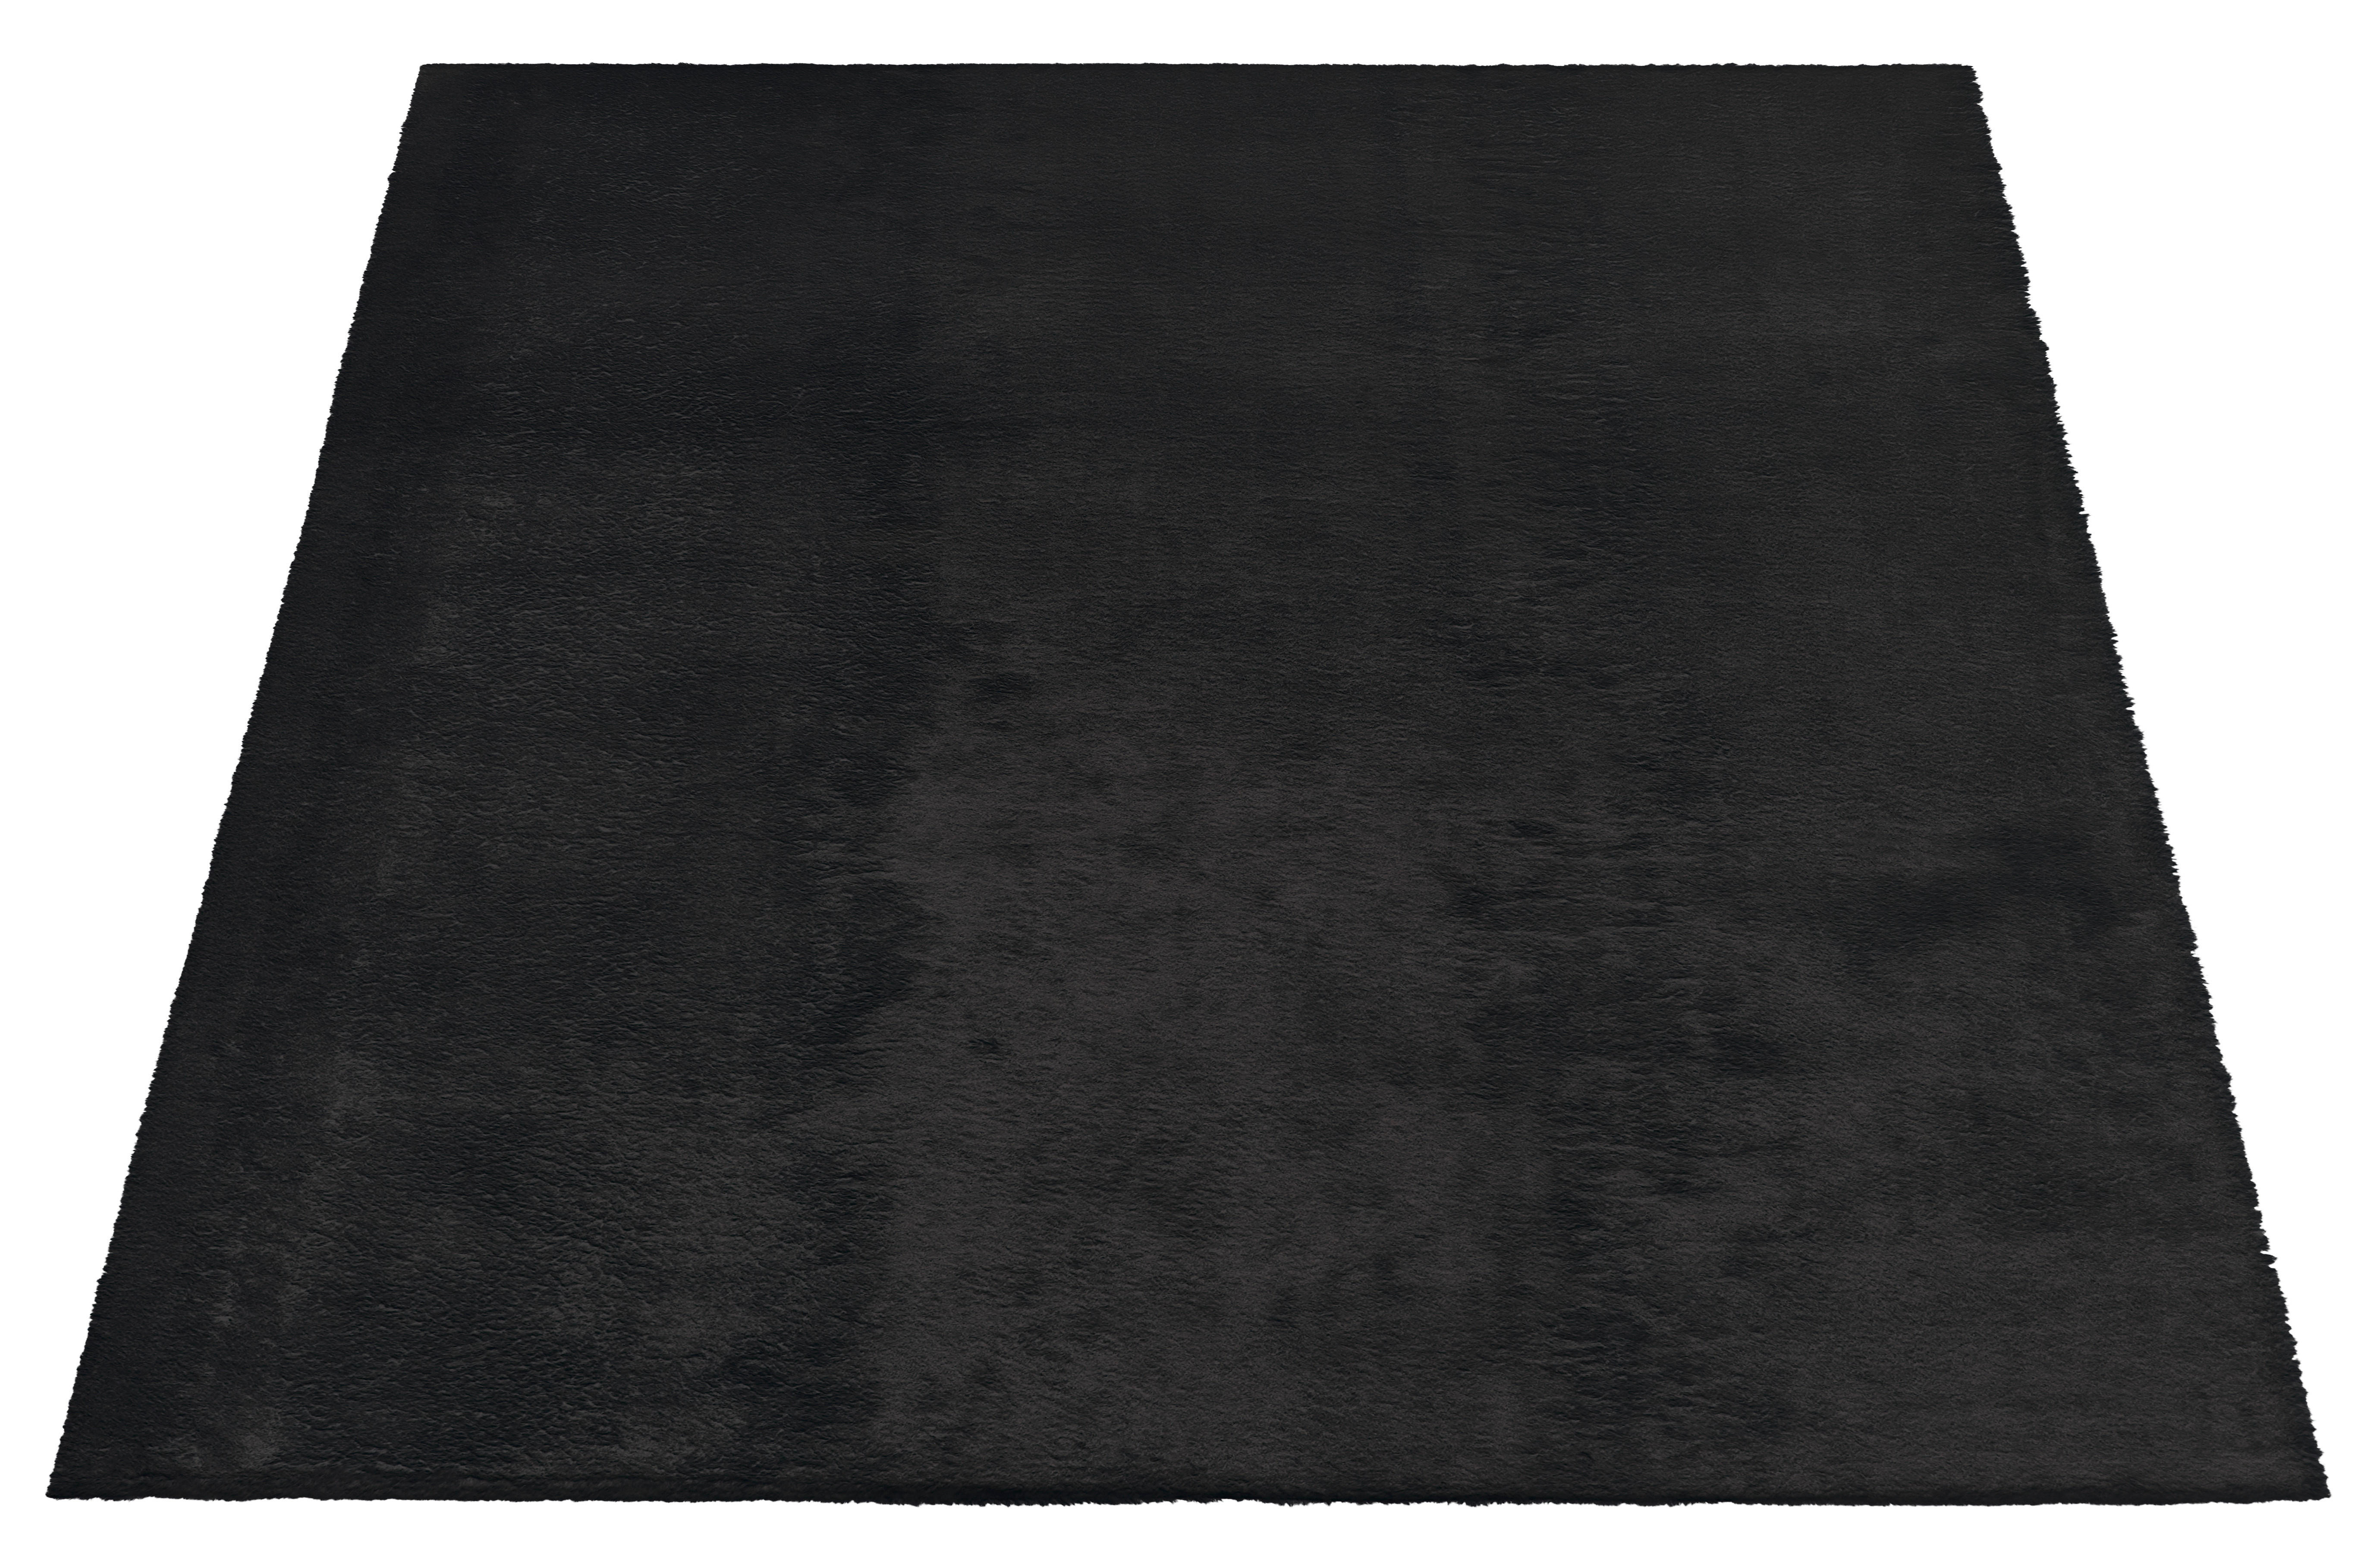 Teppich Fuzzy Eco schwarz B/L: ca. 80x140 cm Fuzzy Eco - schwarz (80,00/140,00cm)